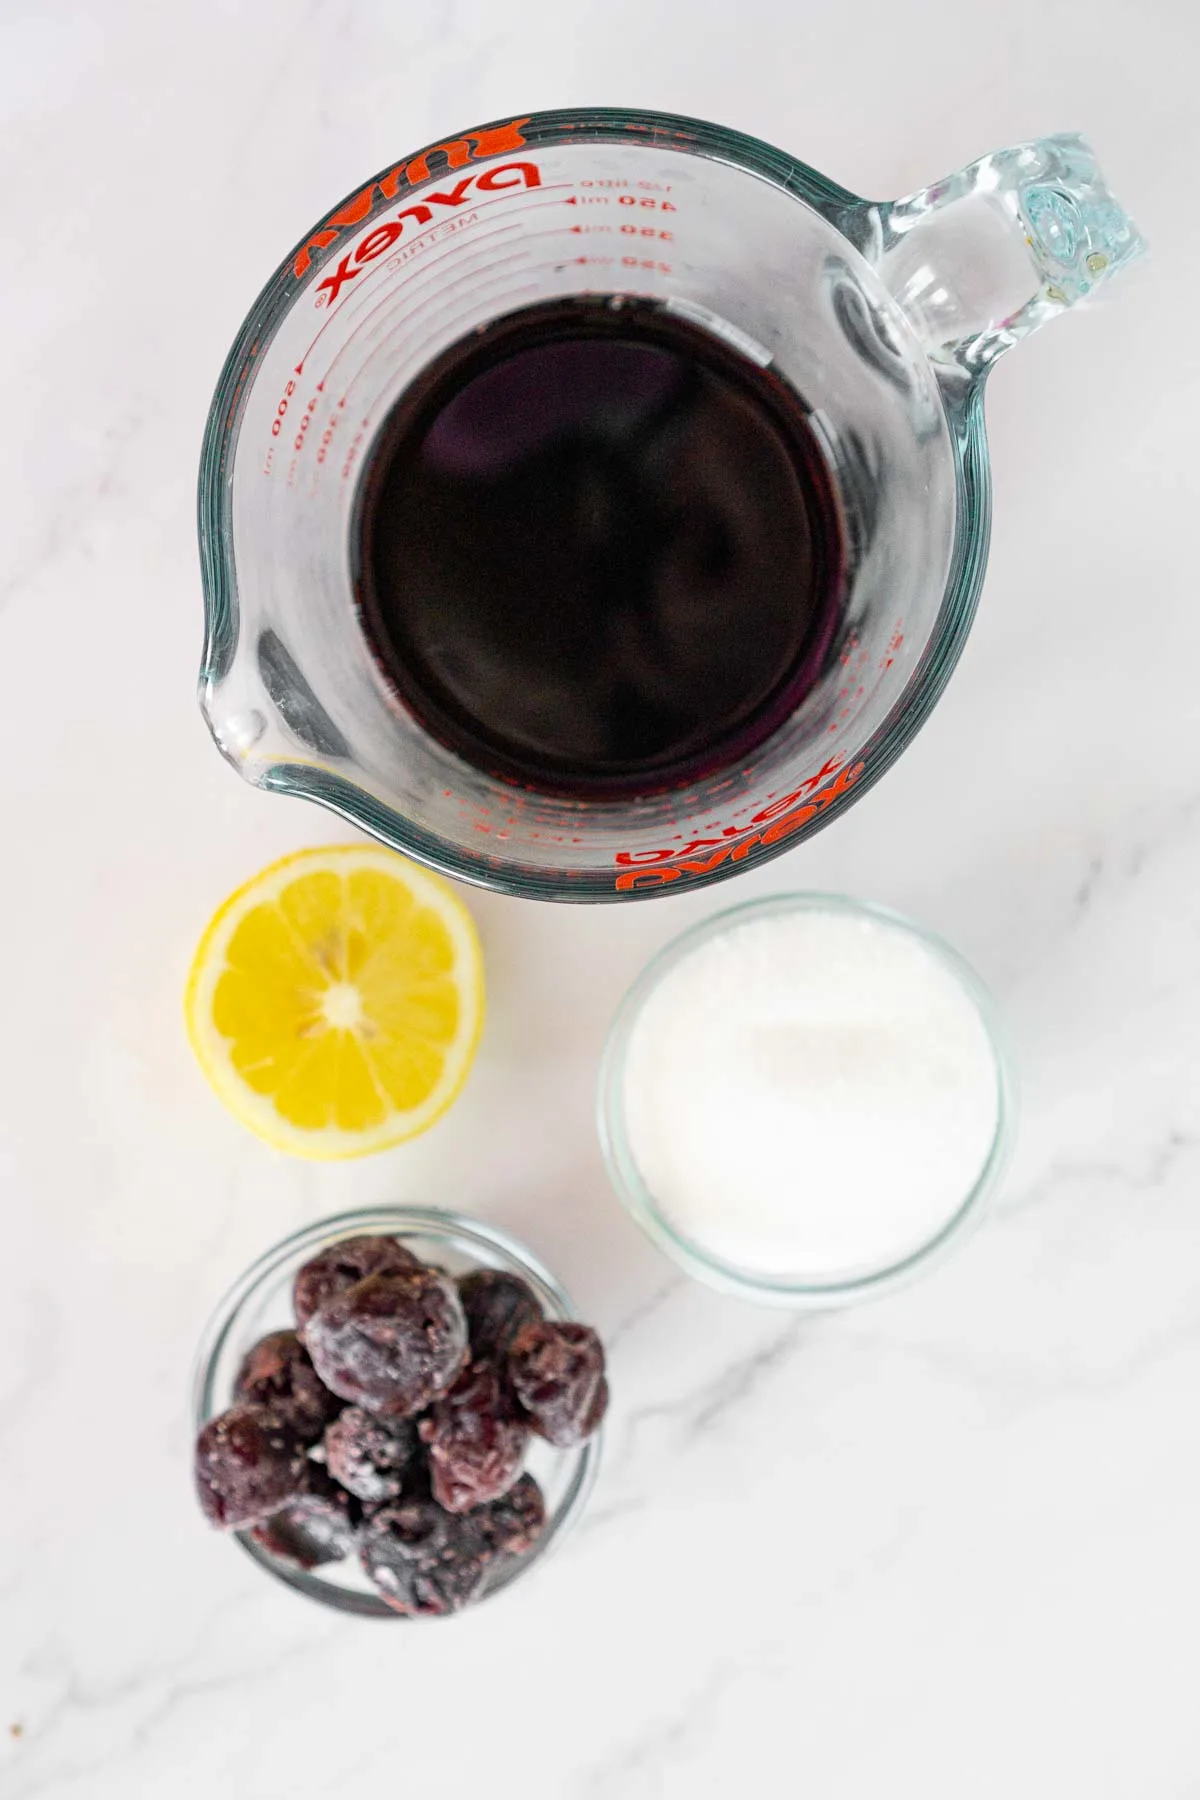 Ingredients to make cherry syrup: cherry juice, cherries, sugar, lemon juice.